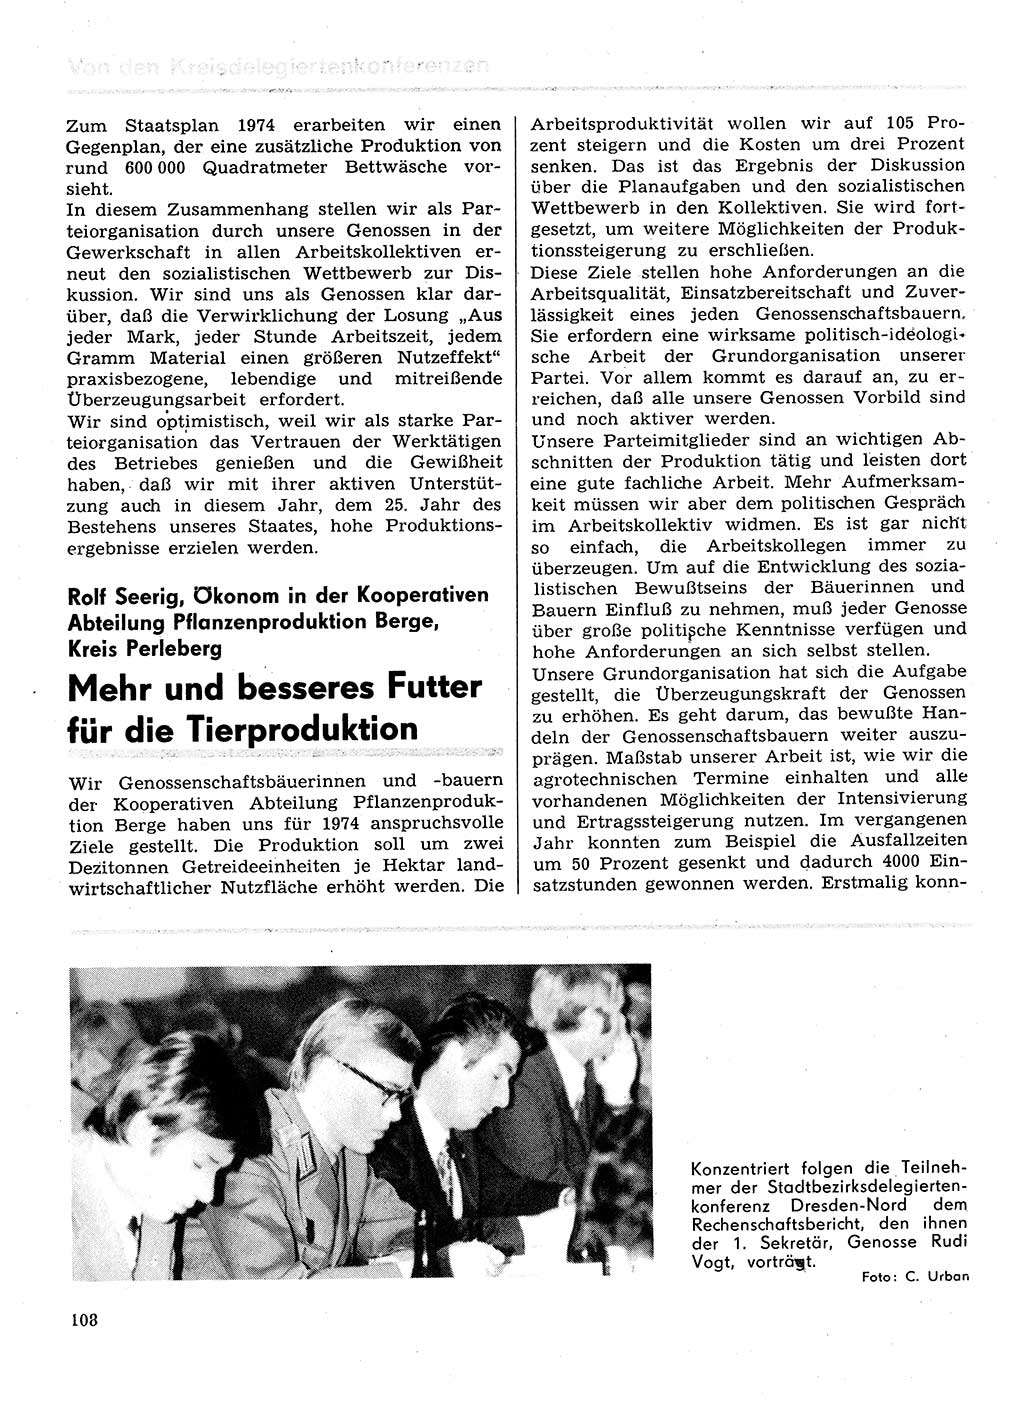 Neuer Weg (NW), Organ des Zentralkomitees (ZK) der SED (Sozialistische Einheitspartei Deutschlands) für Fragen des Parteilebens, 29. Jahrgang [Deutsche Demokratische Republik (DDR)] 1974, Seite 108 (NW ZK SED DDR 1974, S. 108)